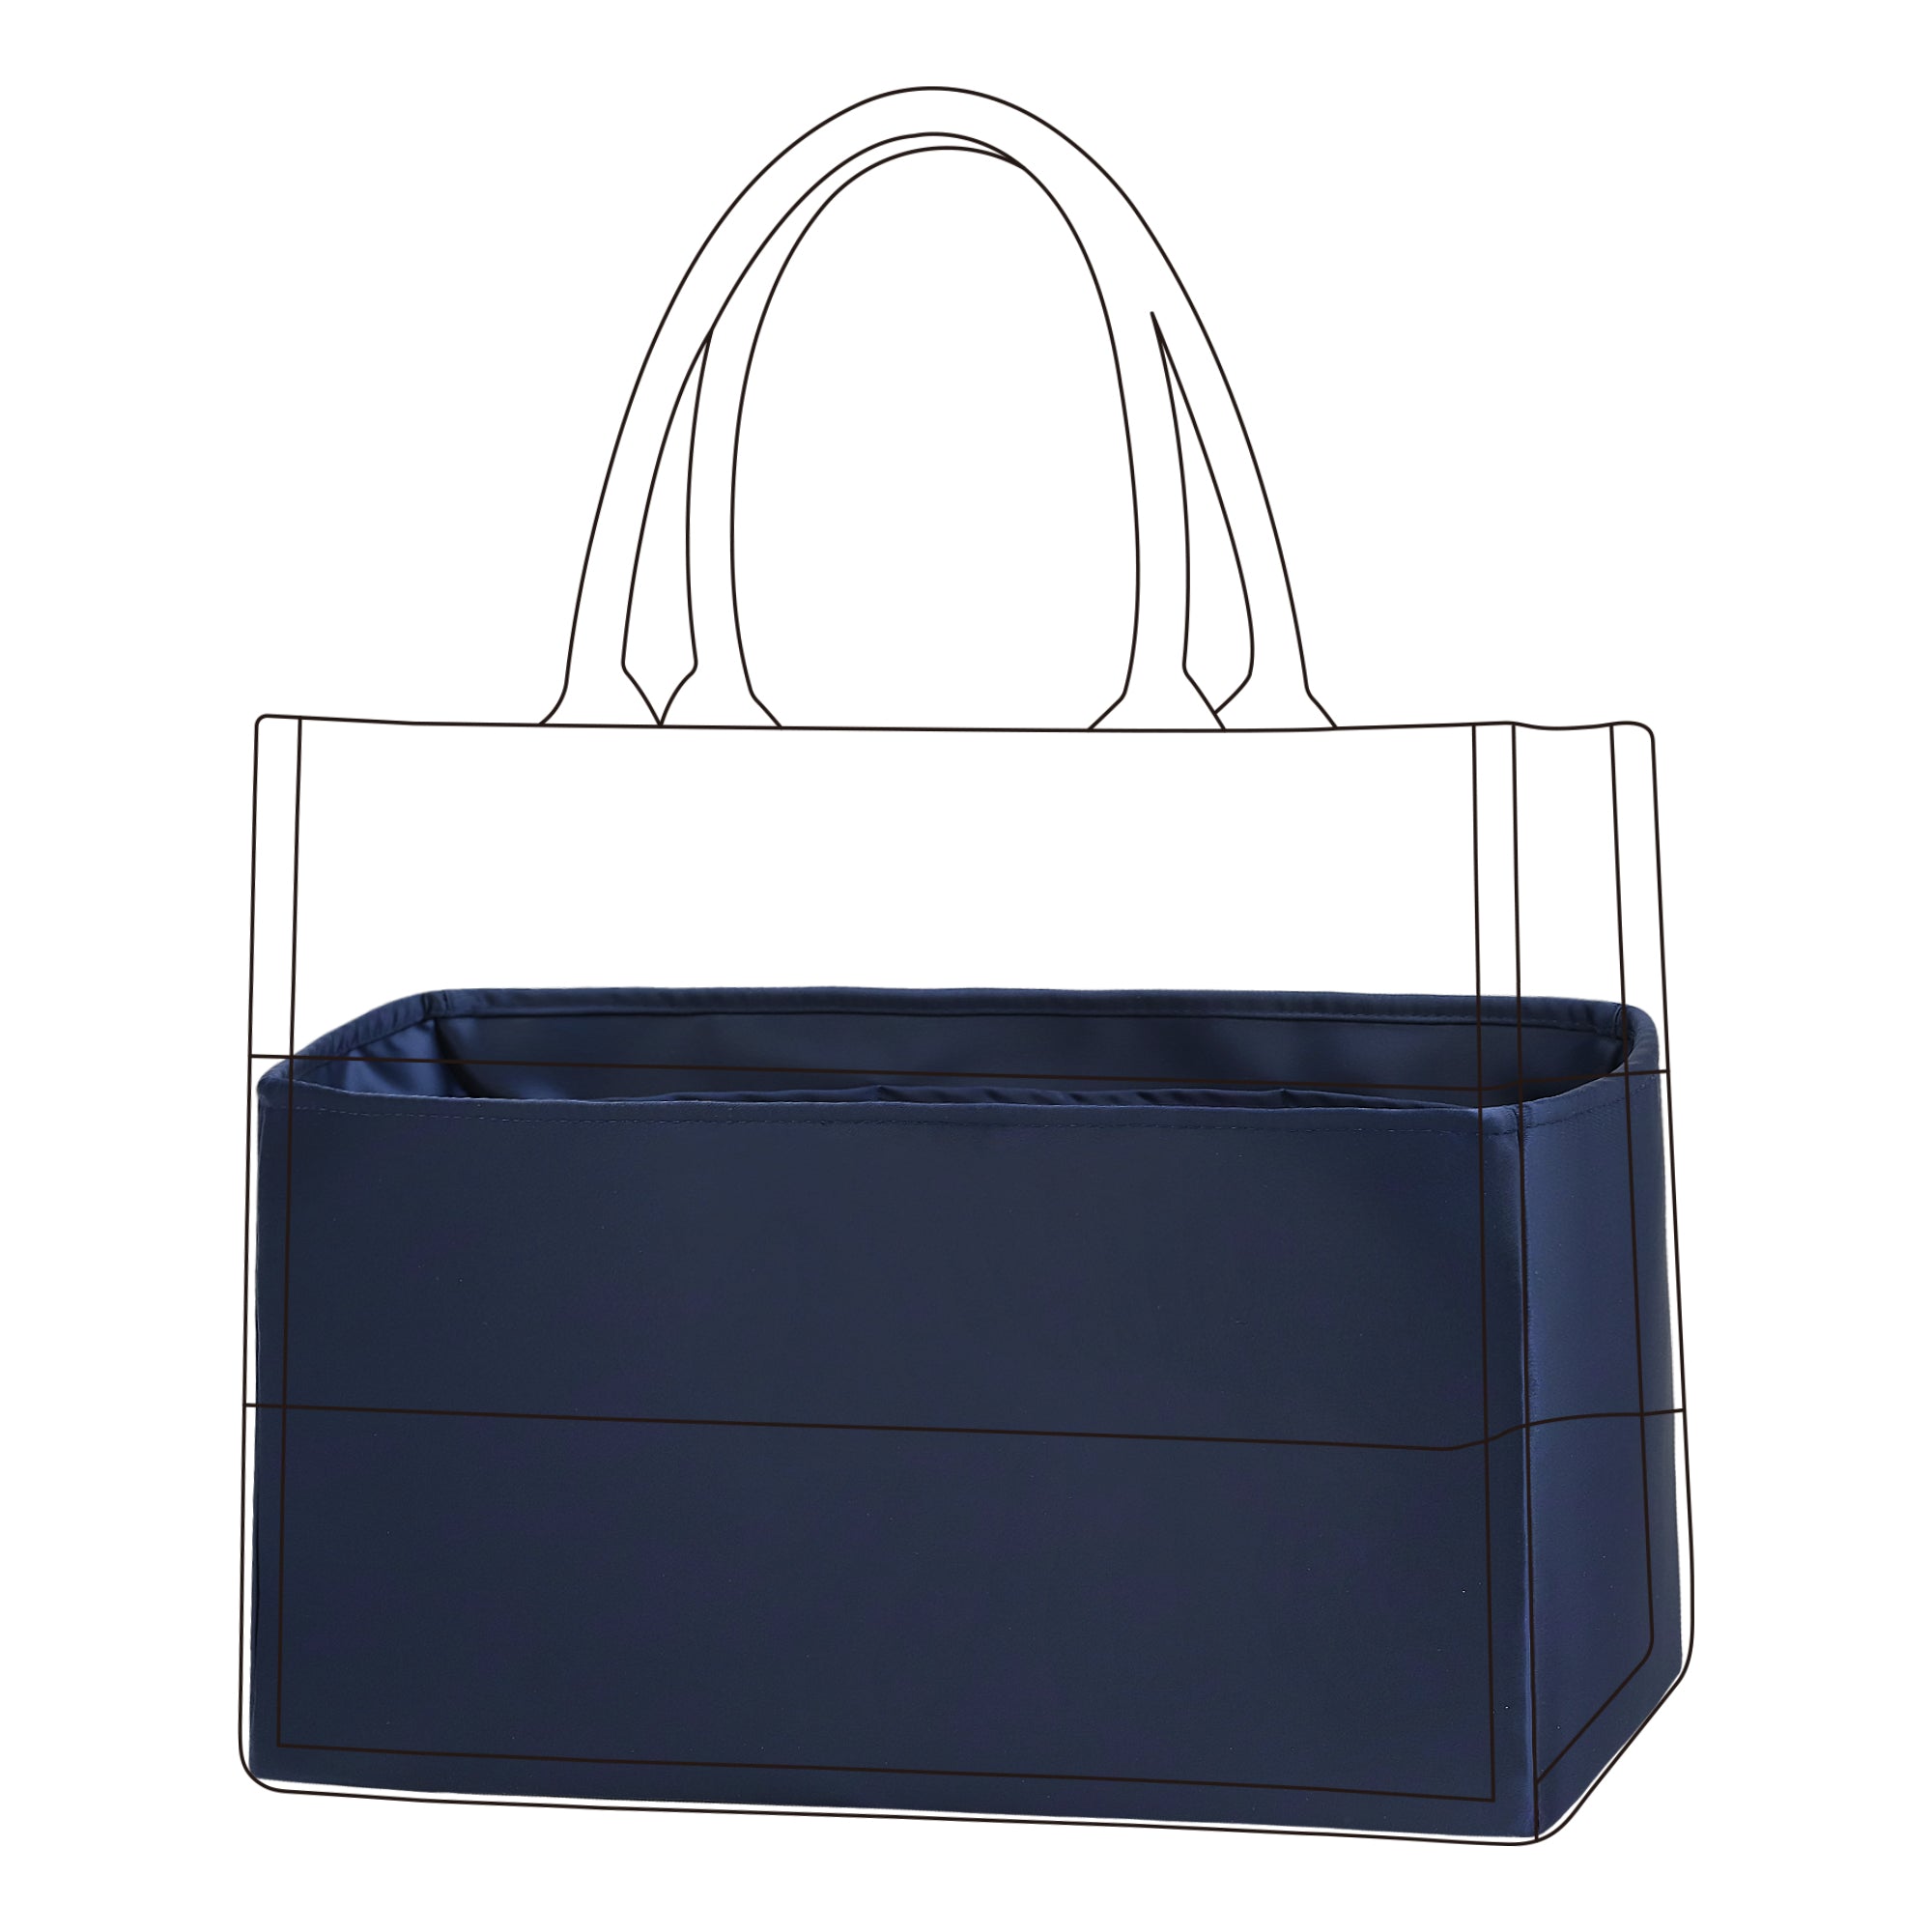 BaginBag® | Handbag Organizer for Dior book tote bags | Dior Purse Insert  | purse insert organizer | organiser inserts for handbags | Dior key pouch | Bag Organizer | Tote Insert bag |  travel bag organizer | organizer purse